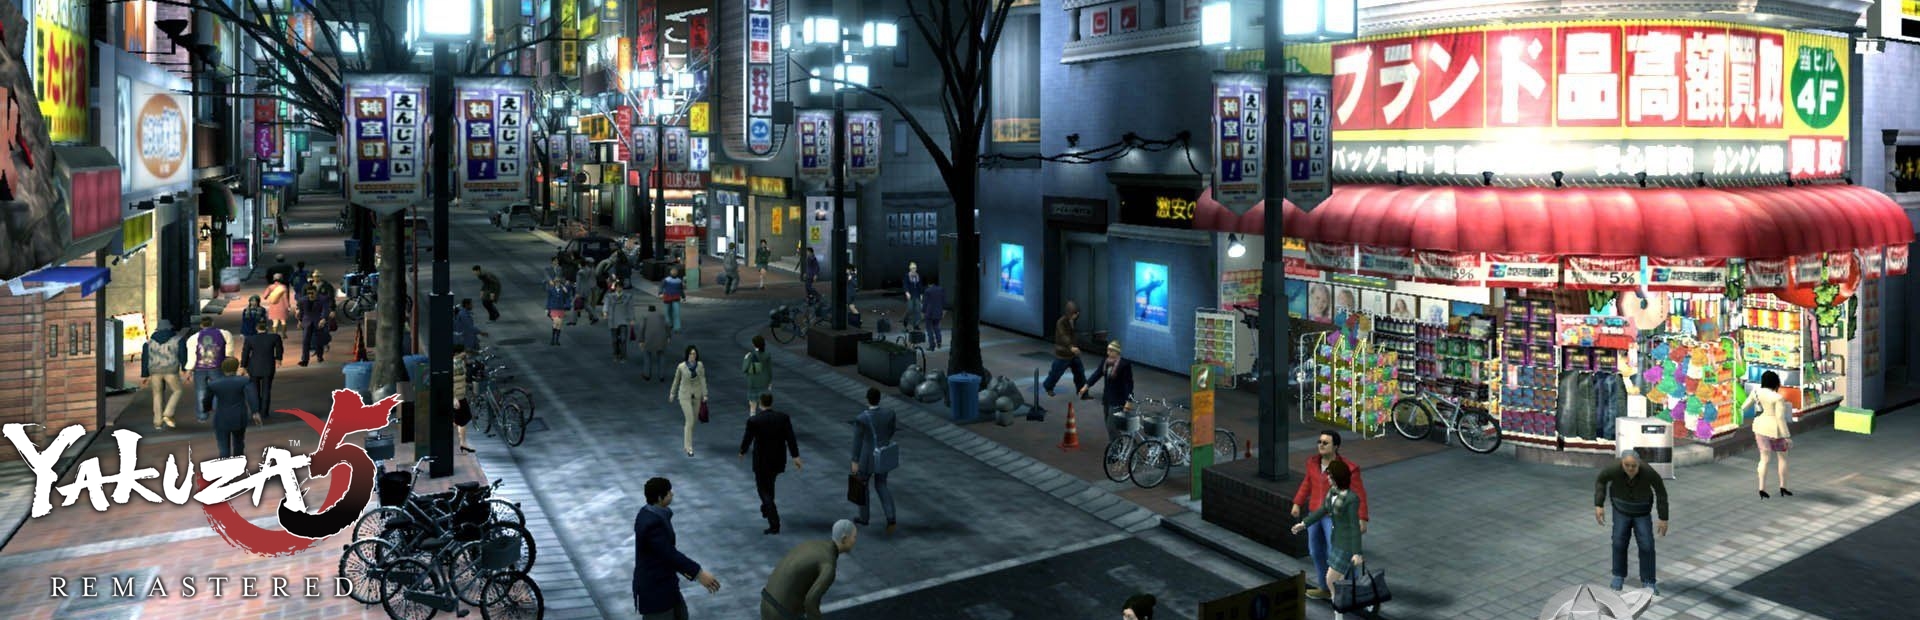 دانلود بازی Yakuza 5 Remastered برای پی سی | گیمباتو